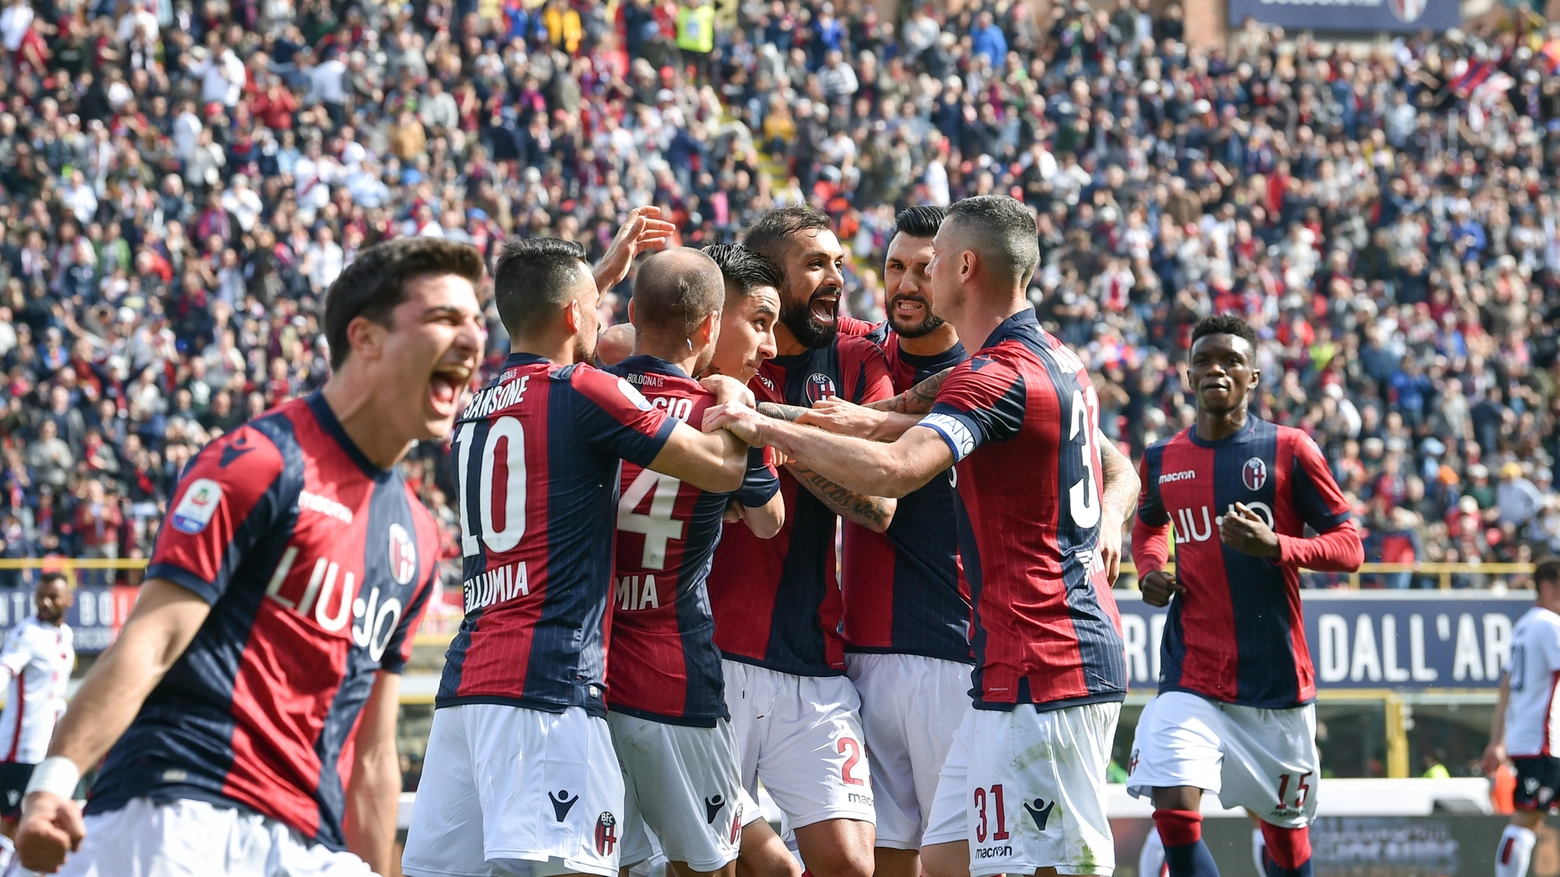 Il Bologna festeggia dopo un gol allo stadio Dall'Ara (Foto LaPresse)